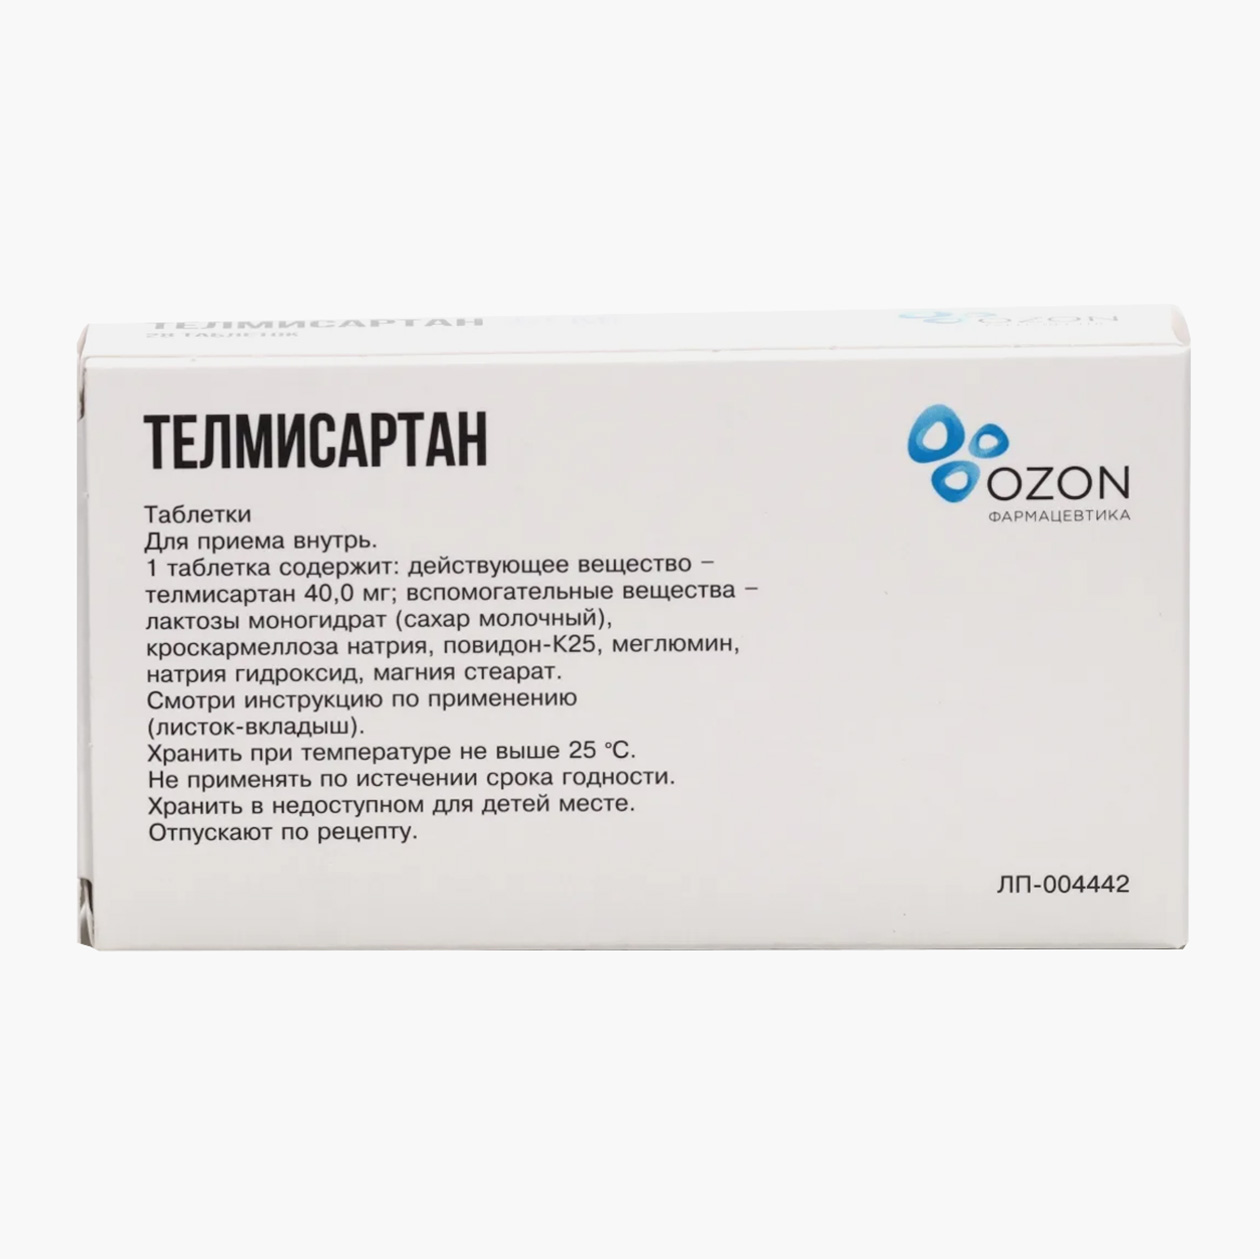 «Телмисартан», 40 мг. Аналог по действующему веществу стоит в четыре с половиной раза дешевле оригинала